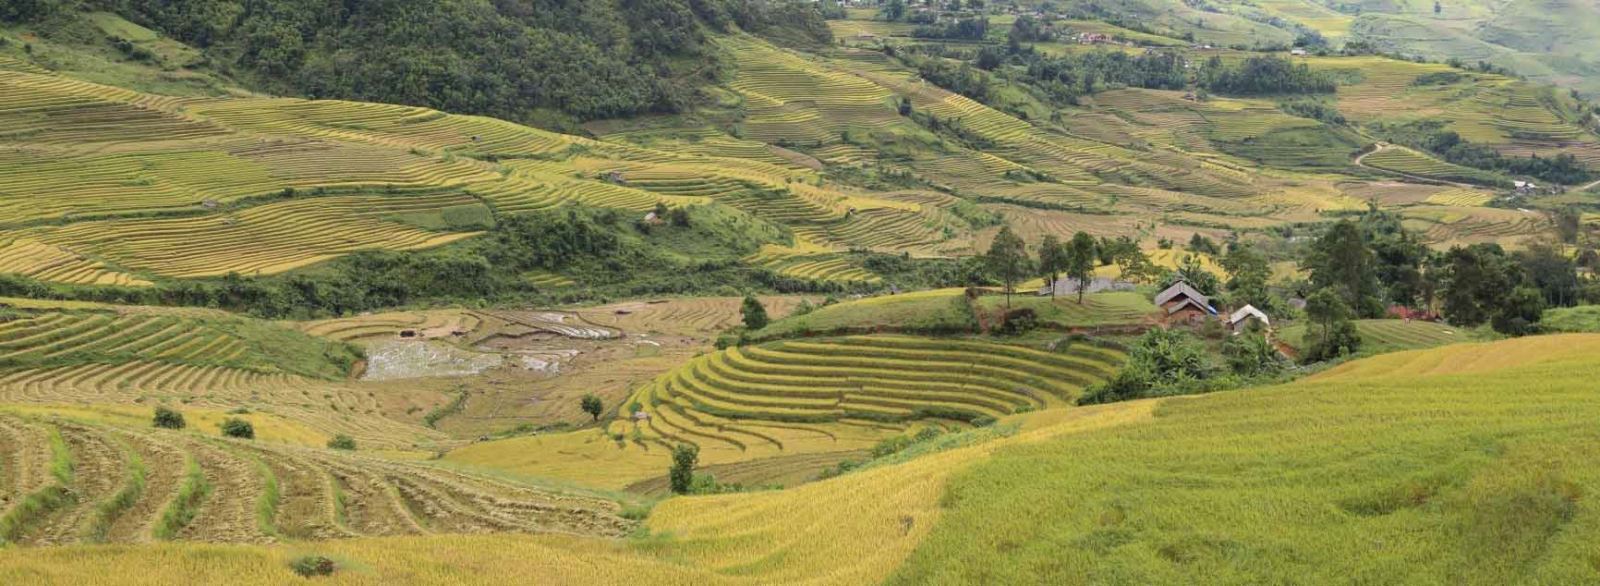 la réserve naturelle de Pu Luong offre de superbes paysages de rizières en terrasses